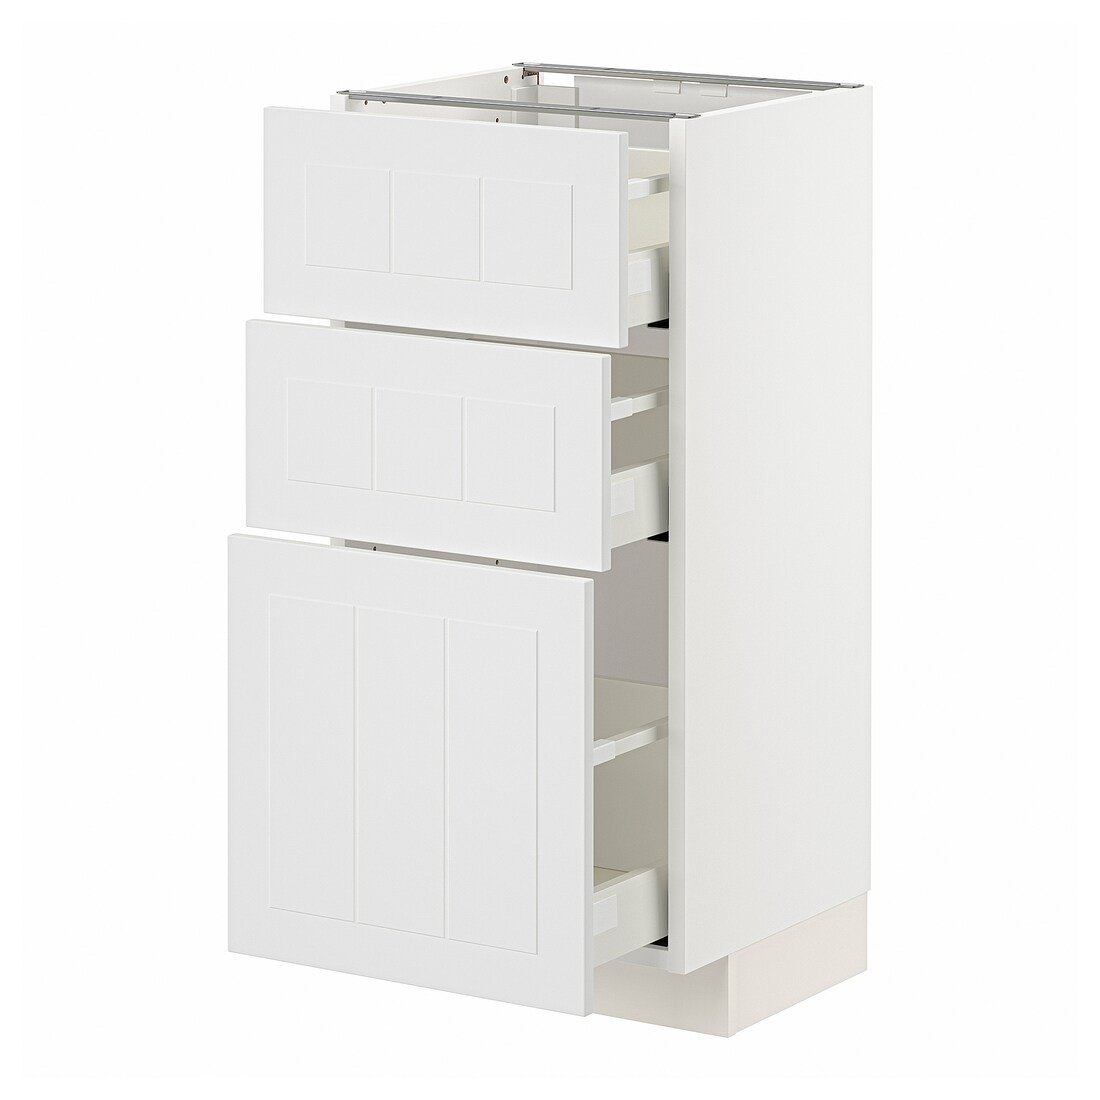 IKEA METOD МЕТОД / MAXIMERA МАКСИМЕРА Напольный шкаф с 3 ящиками, белый / Stensund белый, 40x37 см 59409515 | 594.095.15